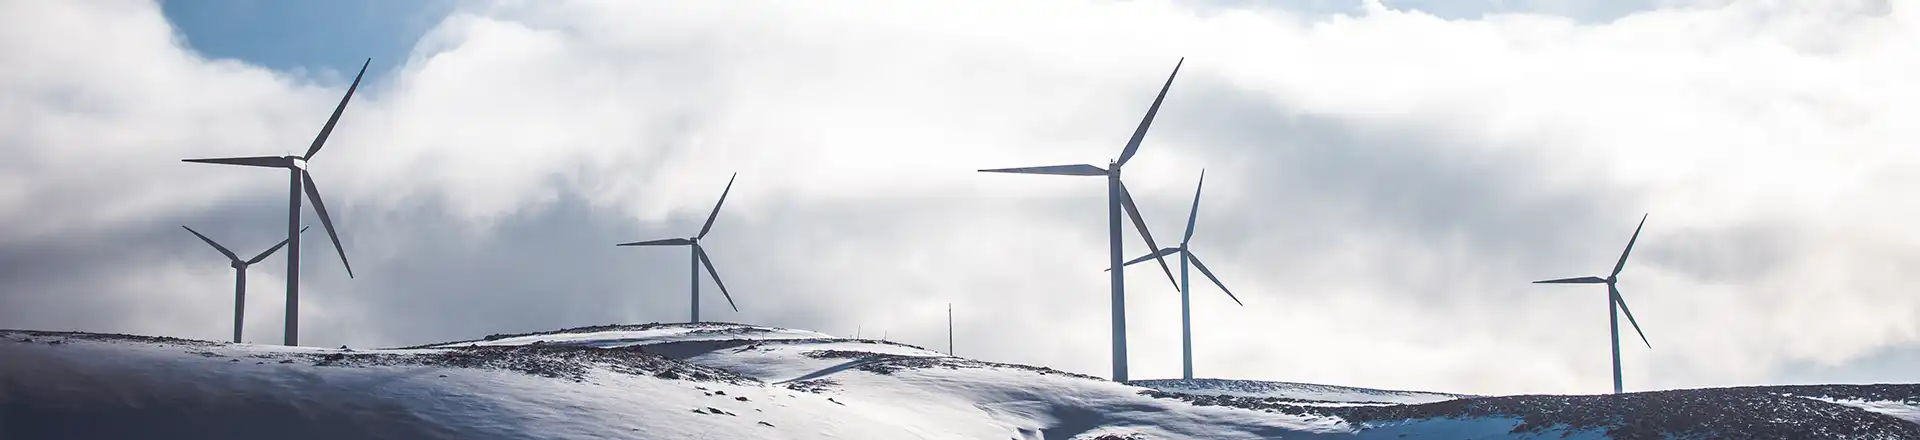 wind turbines on snow covered hills